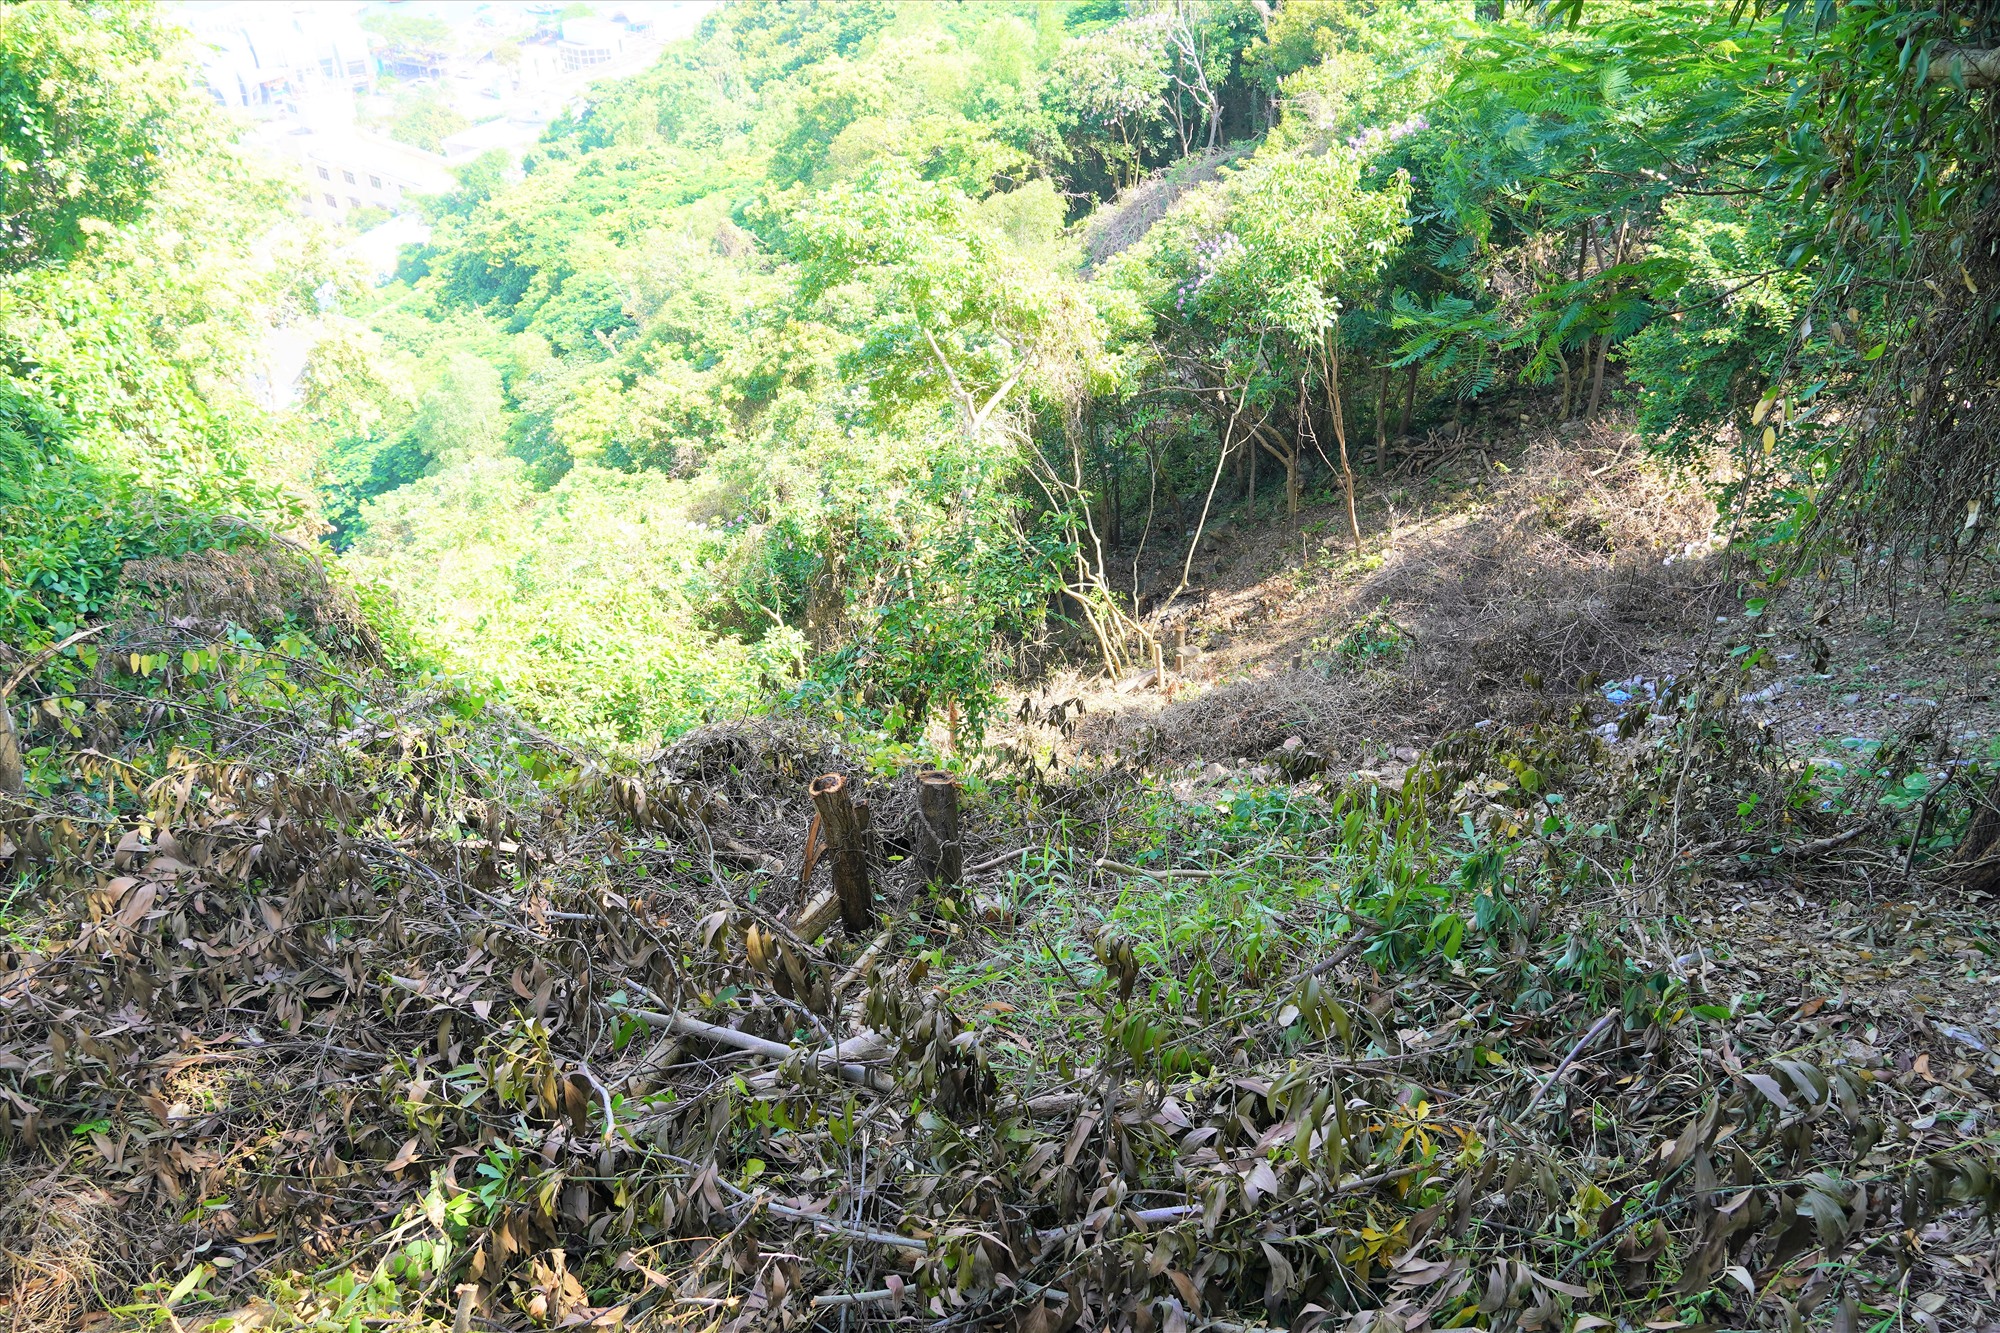 Tại điểm trên cao của mảnh cây xanh bị vạt, phóng viên ghi nhận tình trạng nhiều cây xanh bị cưa cắt, ngang gốc, một số cây bị tỉa cành... tạo ra một mảng trống trên sườn núi. Ảnh: Thành An